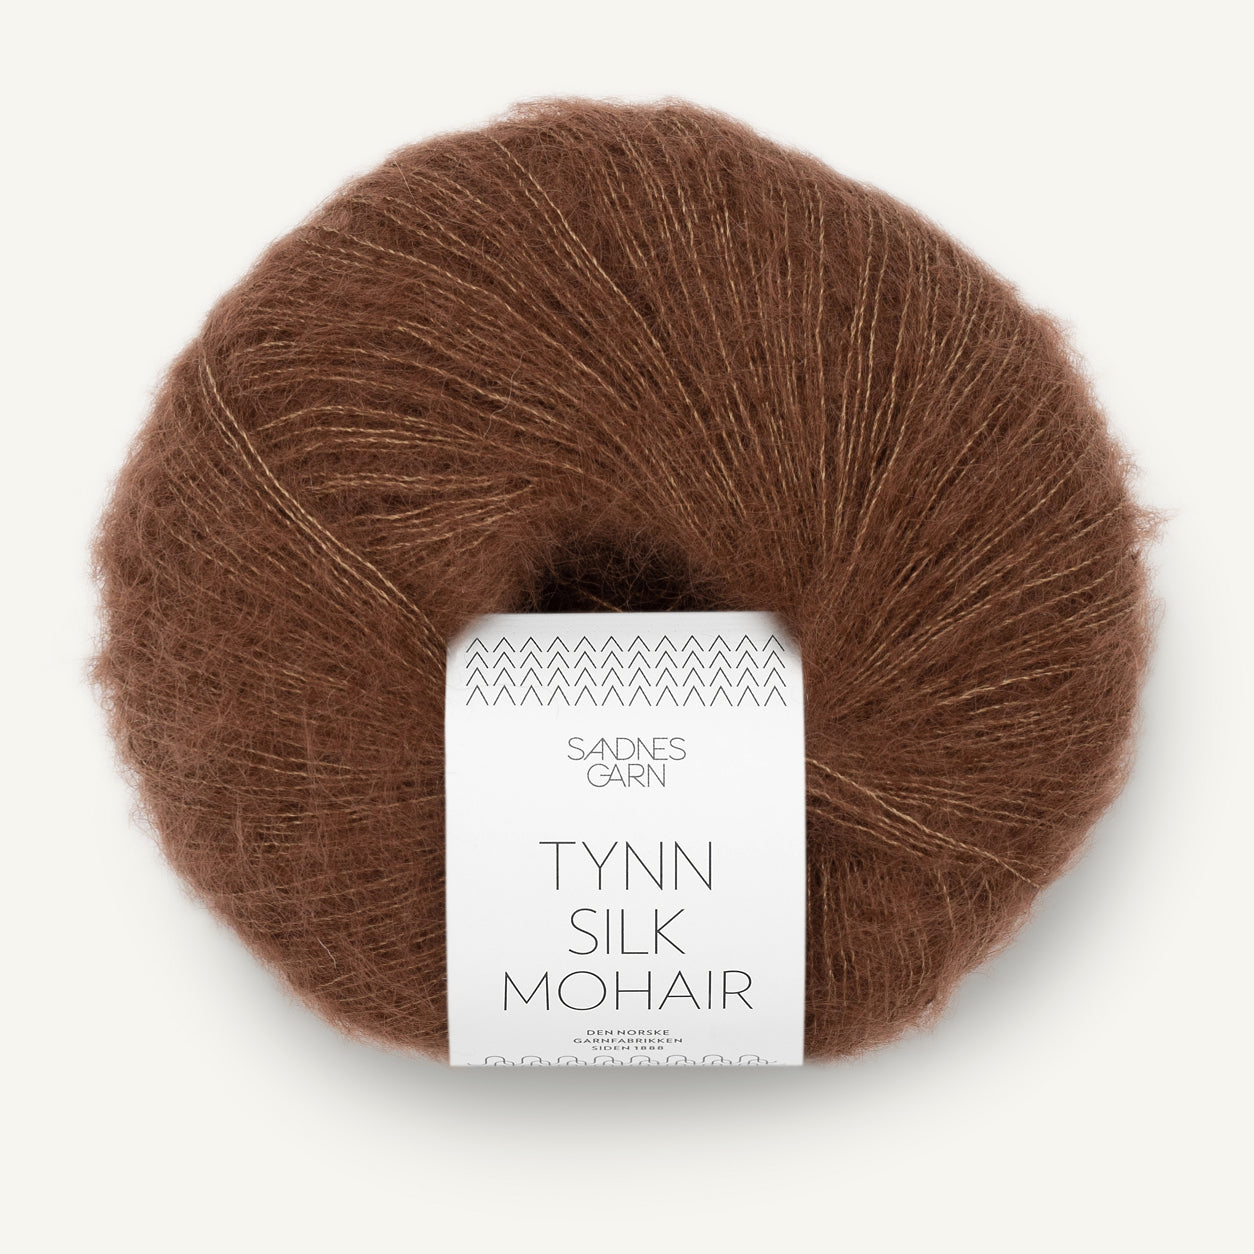 Tynn Silk Mohair chokolade [3073]